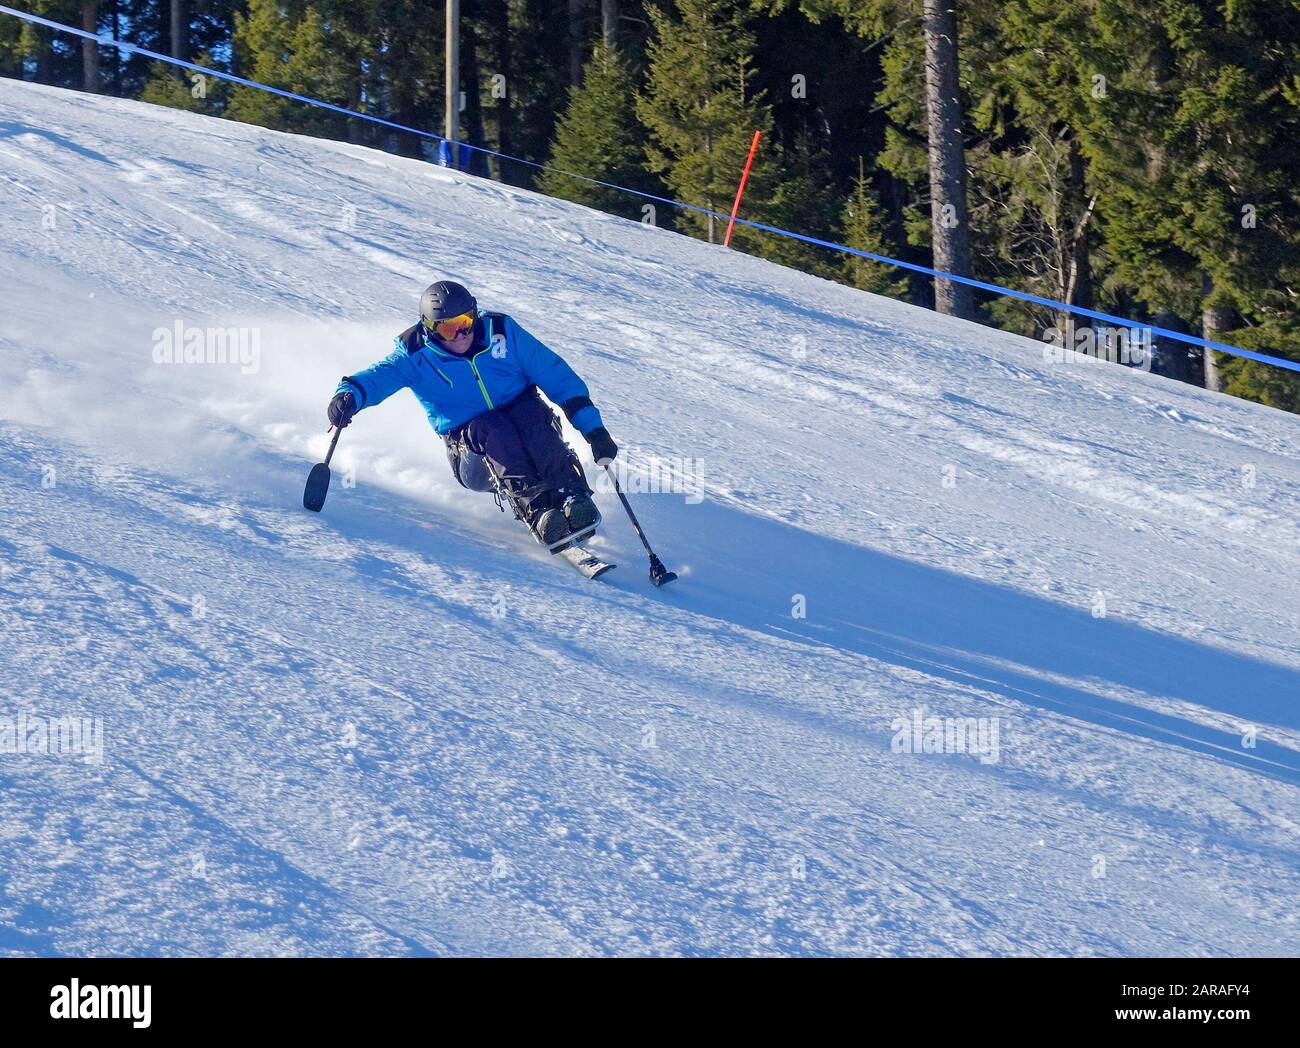 A paraplegic man skiing on a Sit Ski. Stock Photo